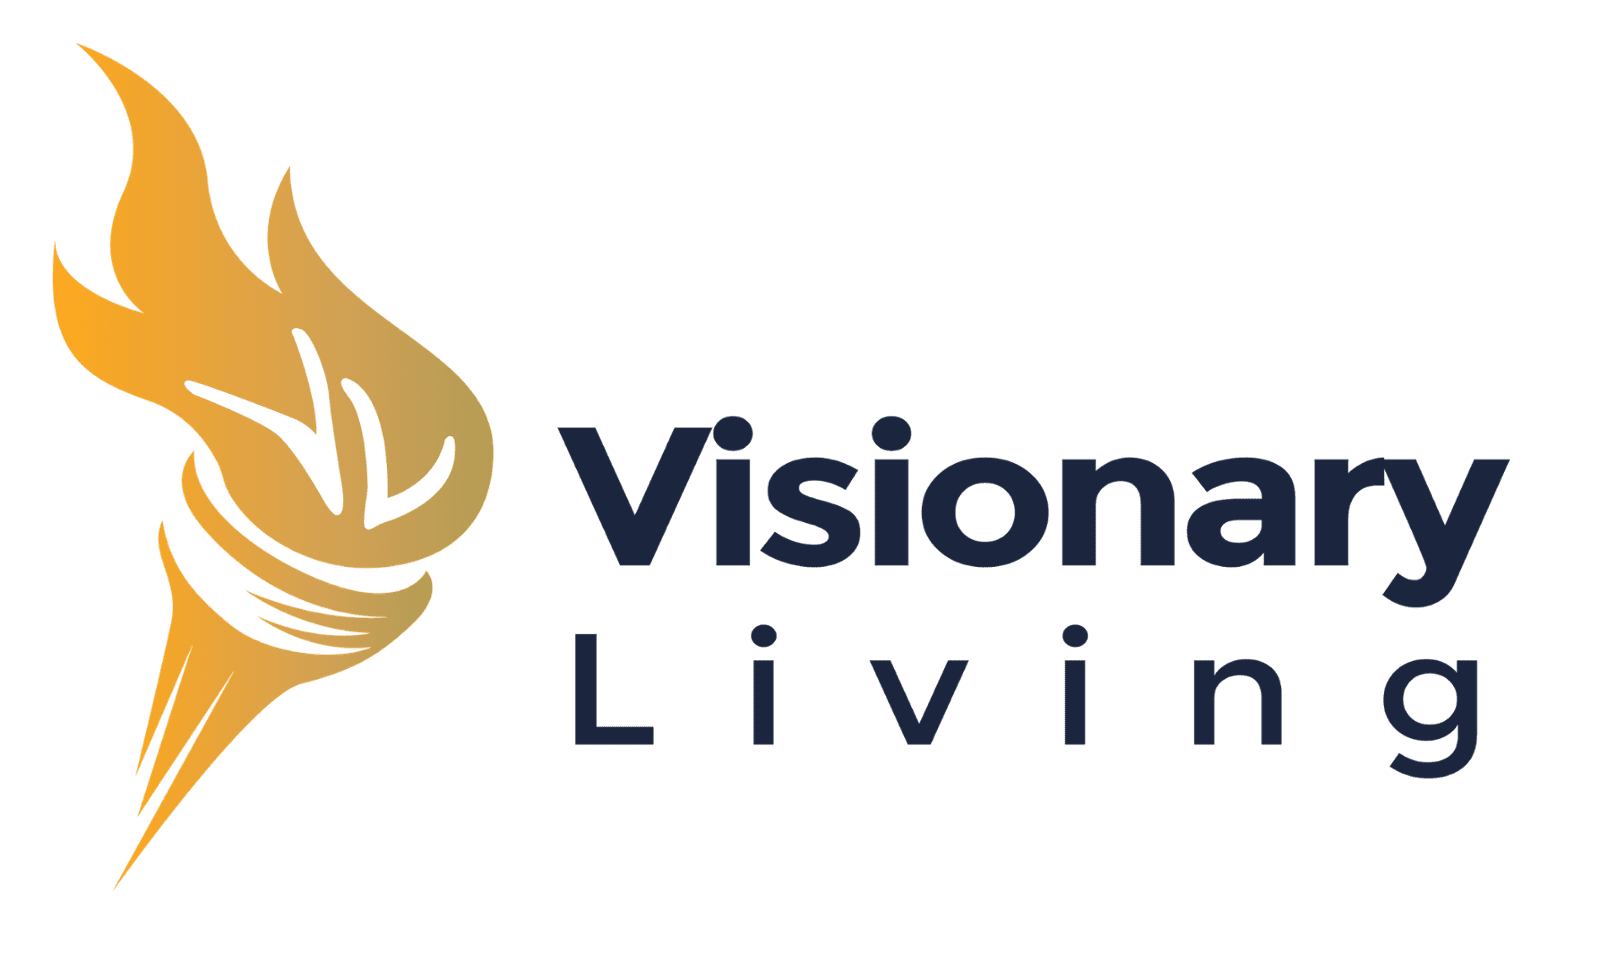 www.VisionaryLivingLeadership.com